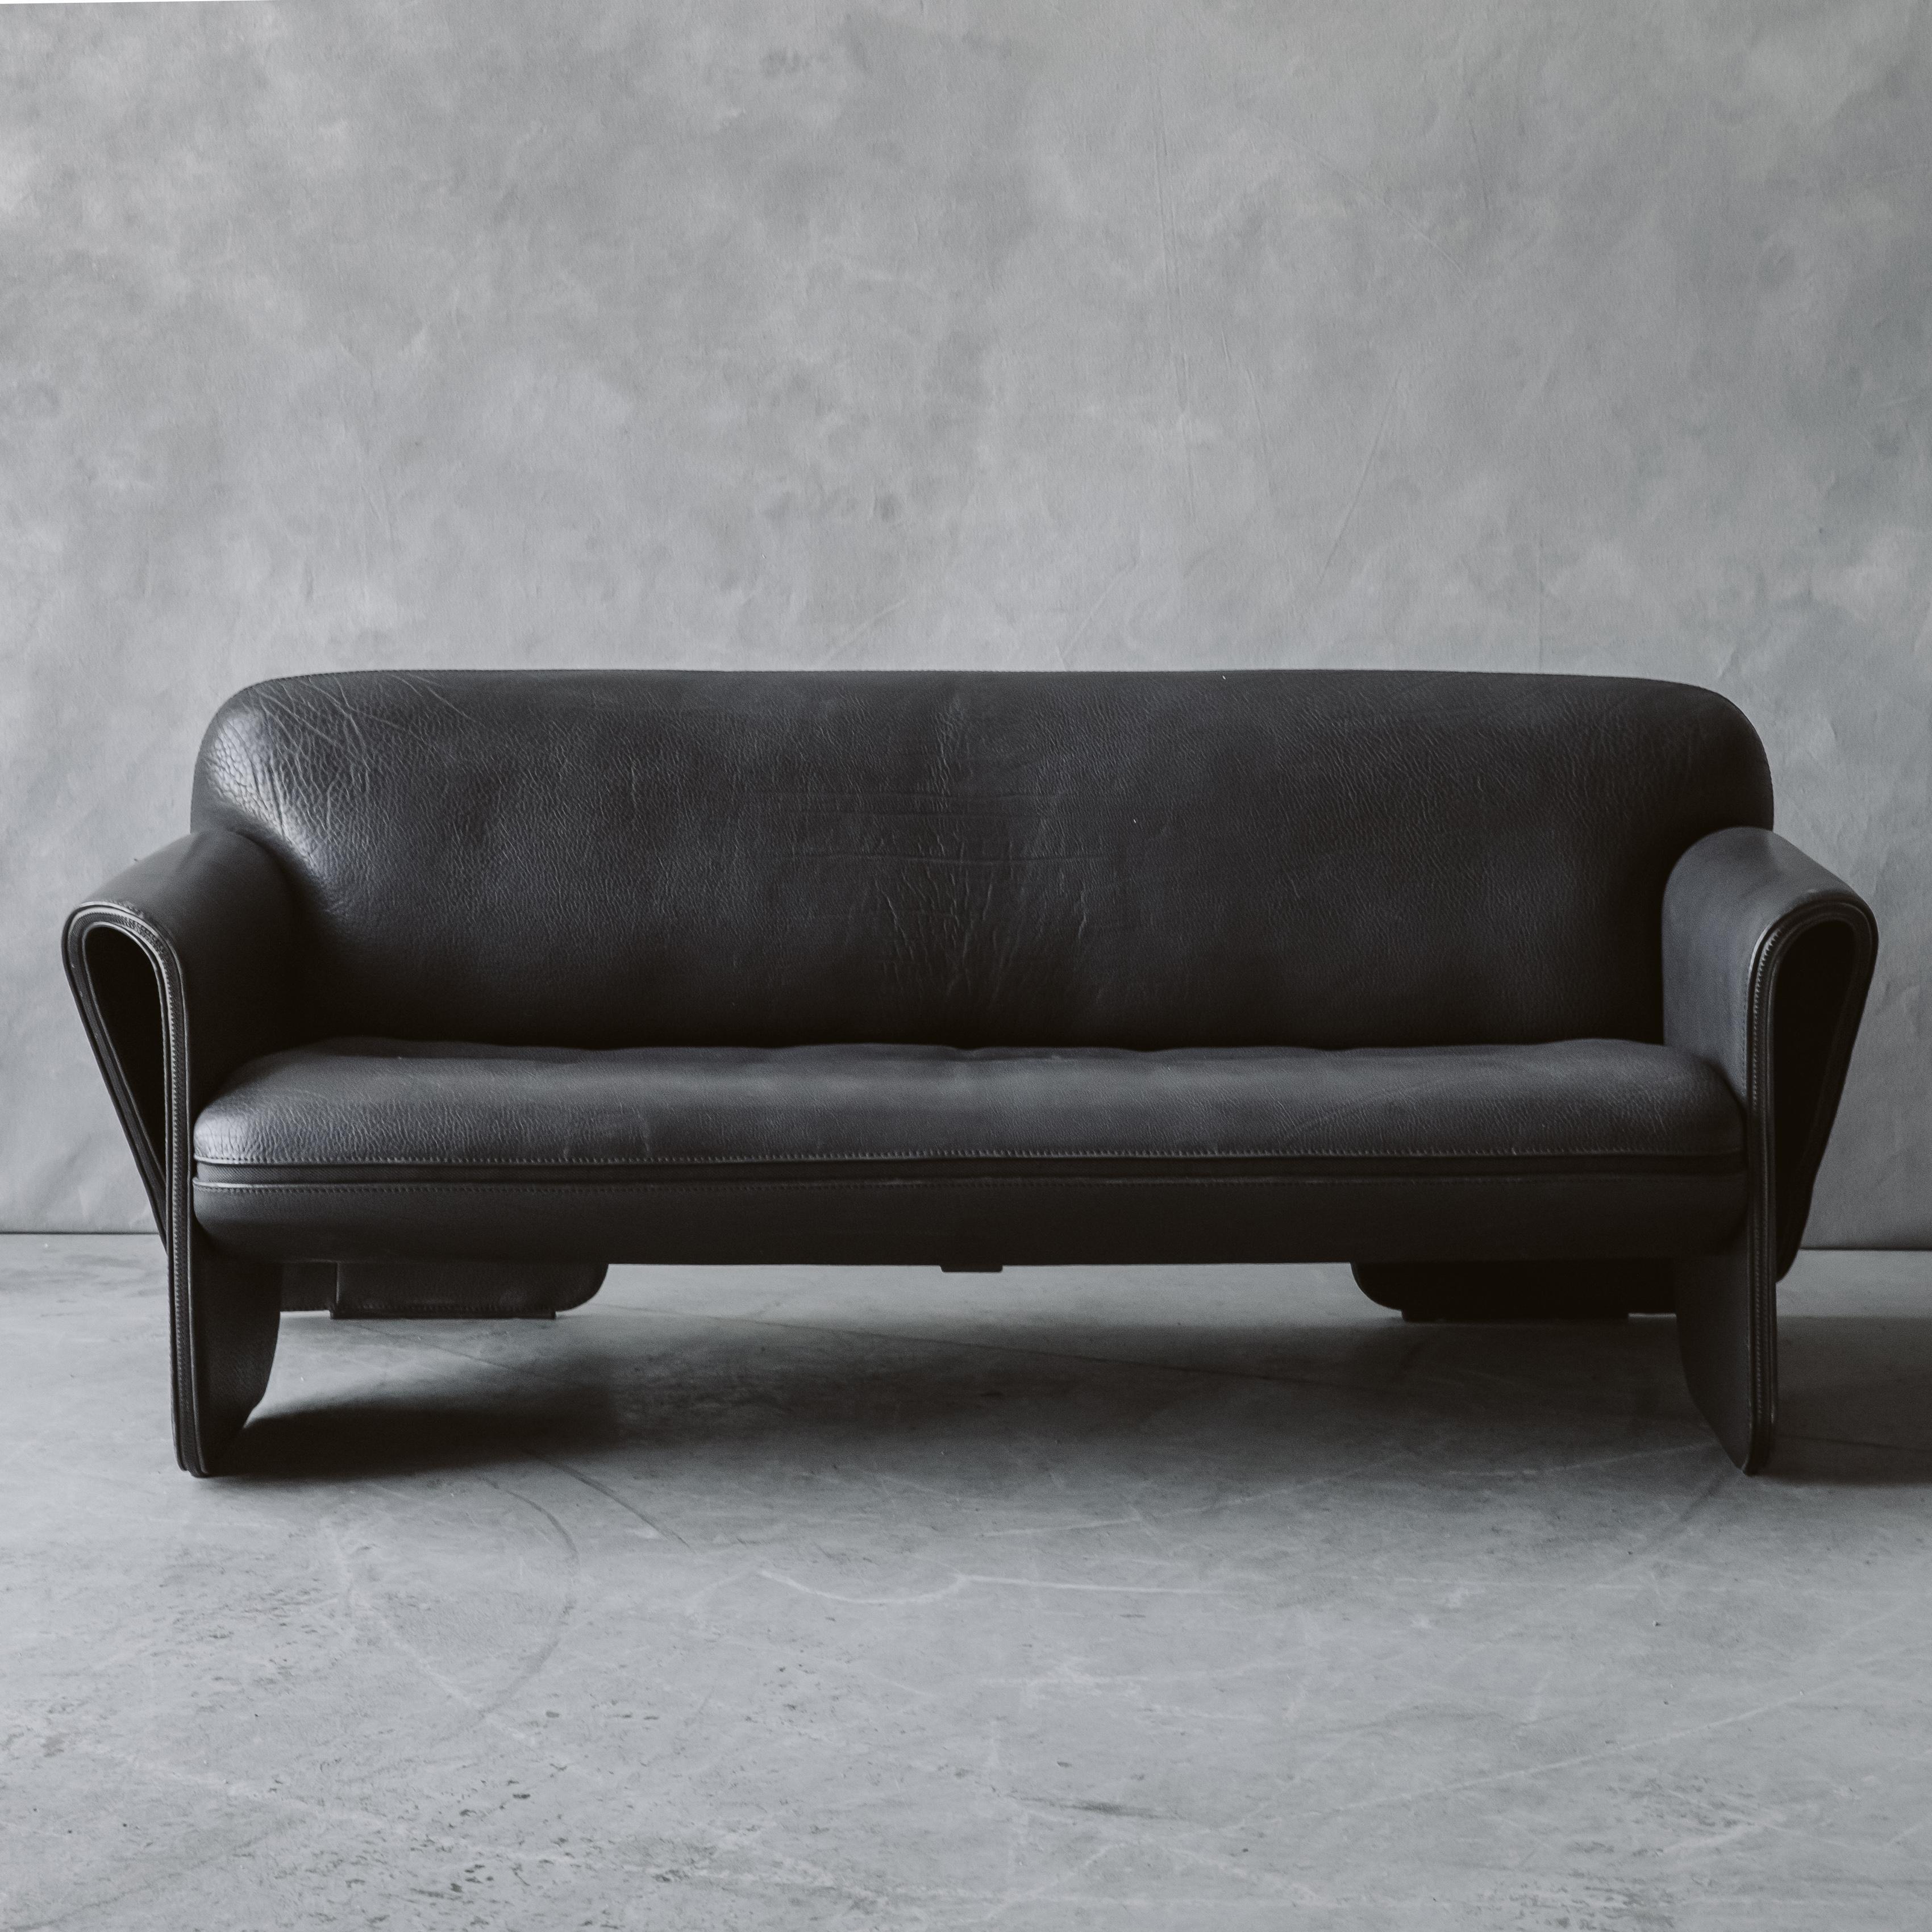 Vintage De Sede Sofa Modell DS 125, Schweiz 1970er Jahre. Original schwarze Lederpolsterung mit großer Abnutzung und Gebrauch.

Wir ziehen es vor, direkt mit unseren Kunden zu sprechen. Wenn Sie also Fragen haben oder mehr wissen möchten, rufen